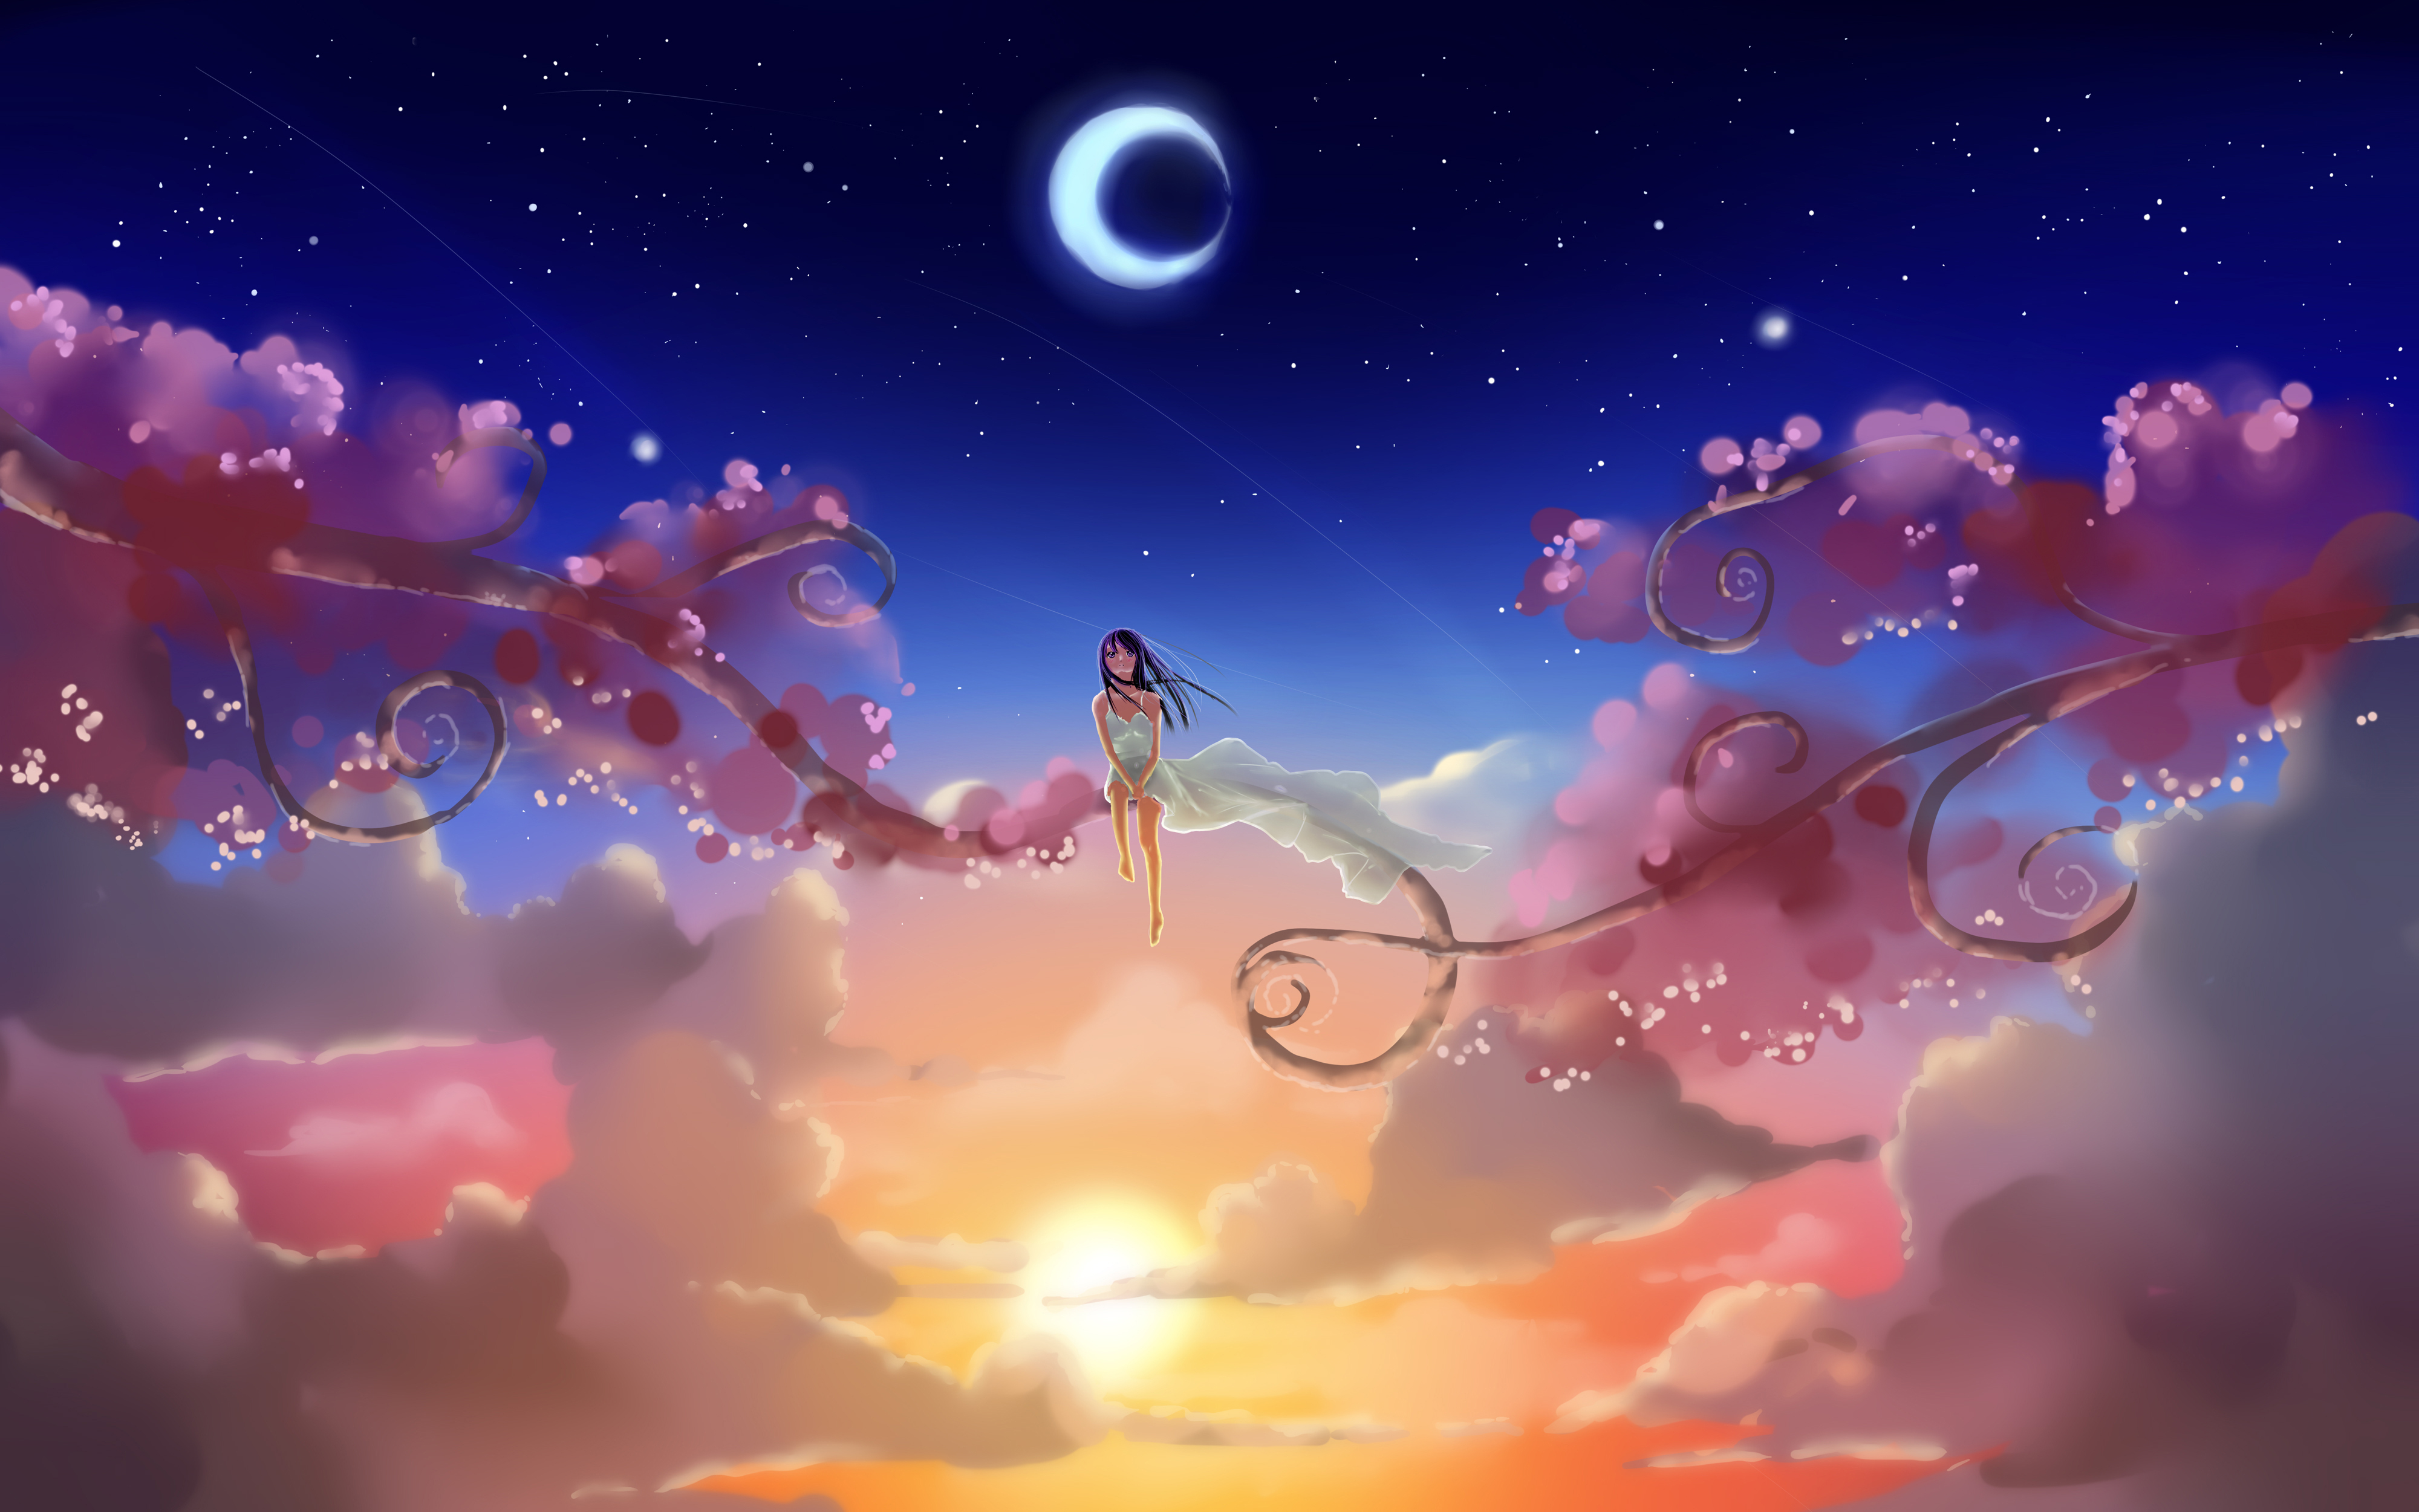 starry sky, sunset, moon, anime, girl FHD, 4K, UHD